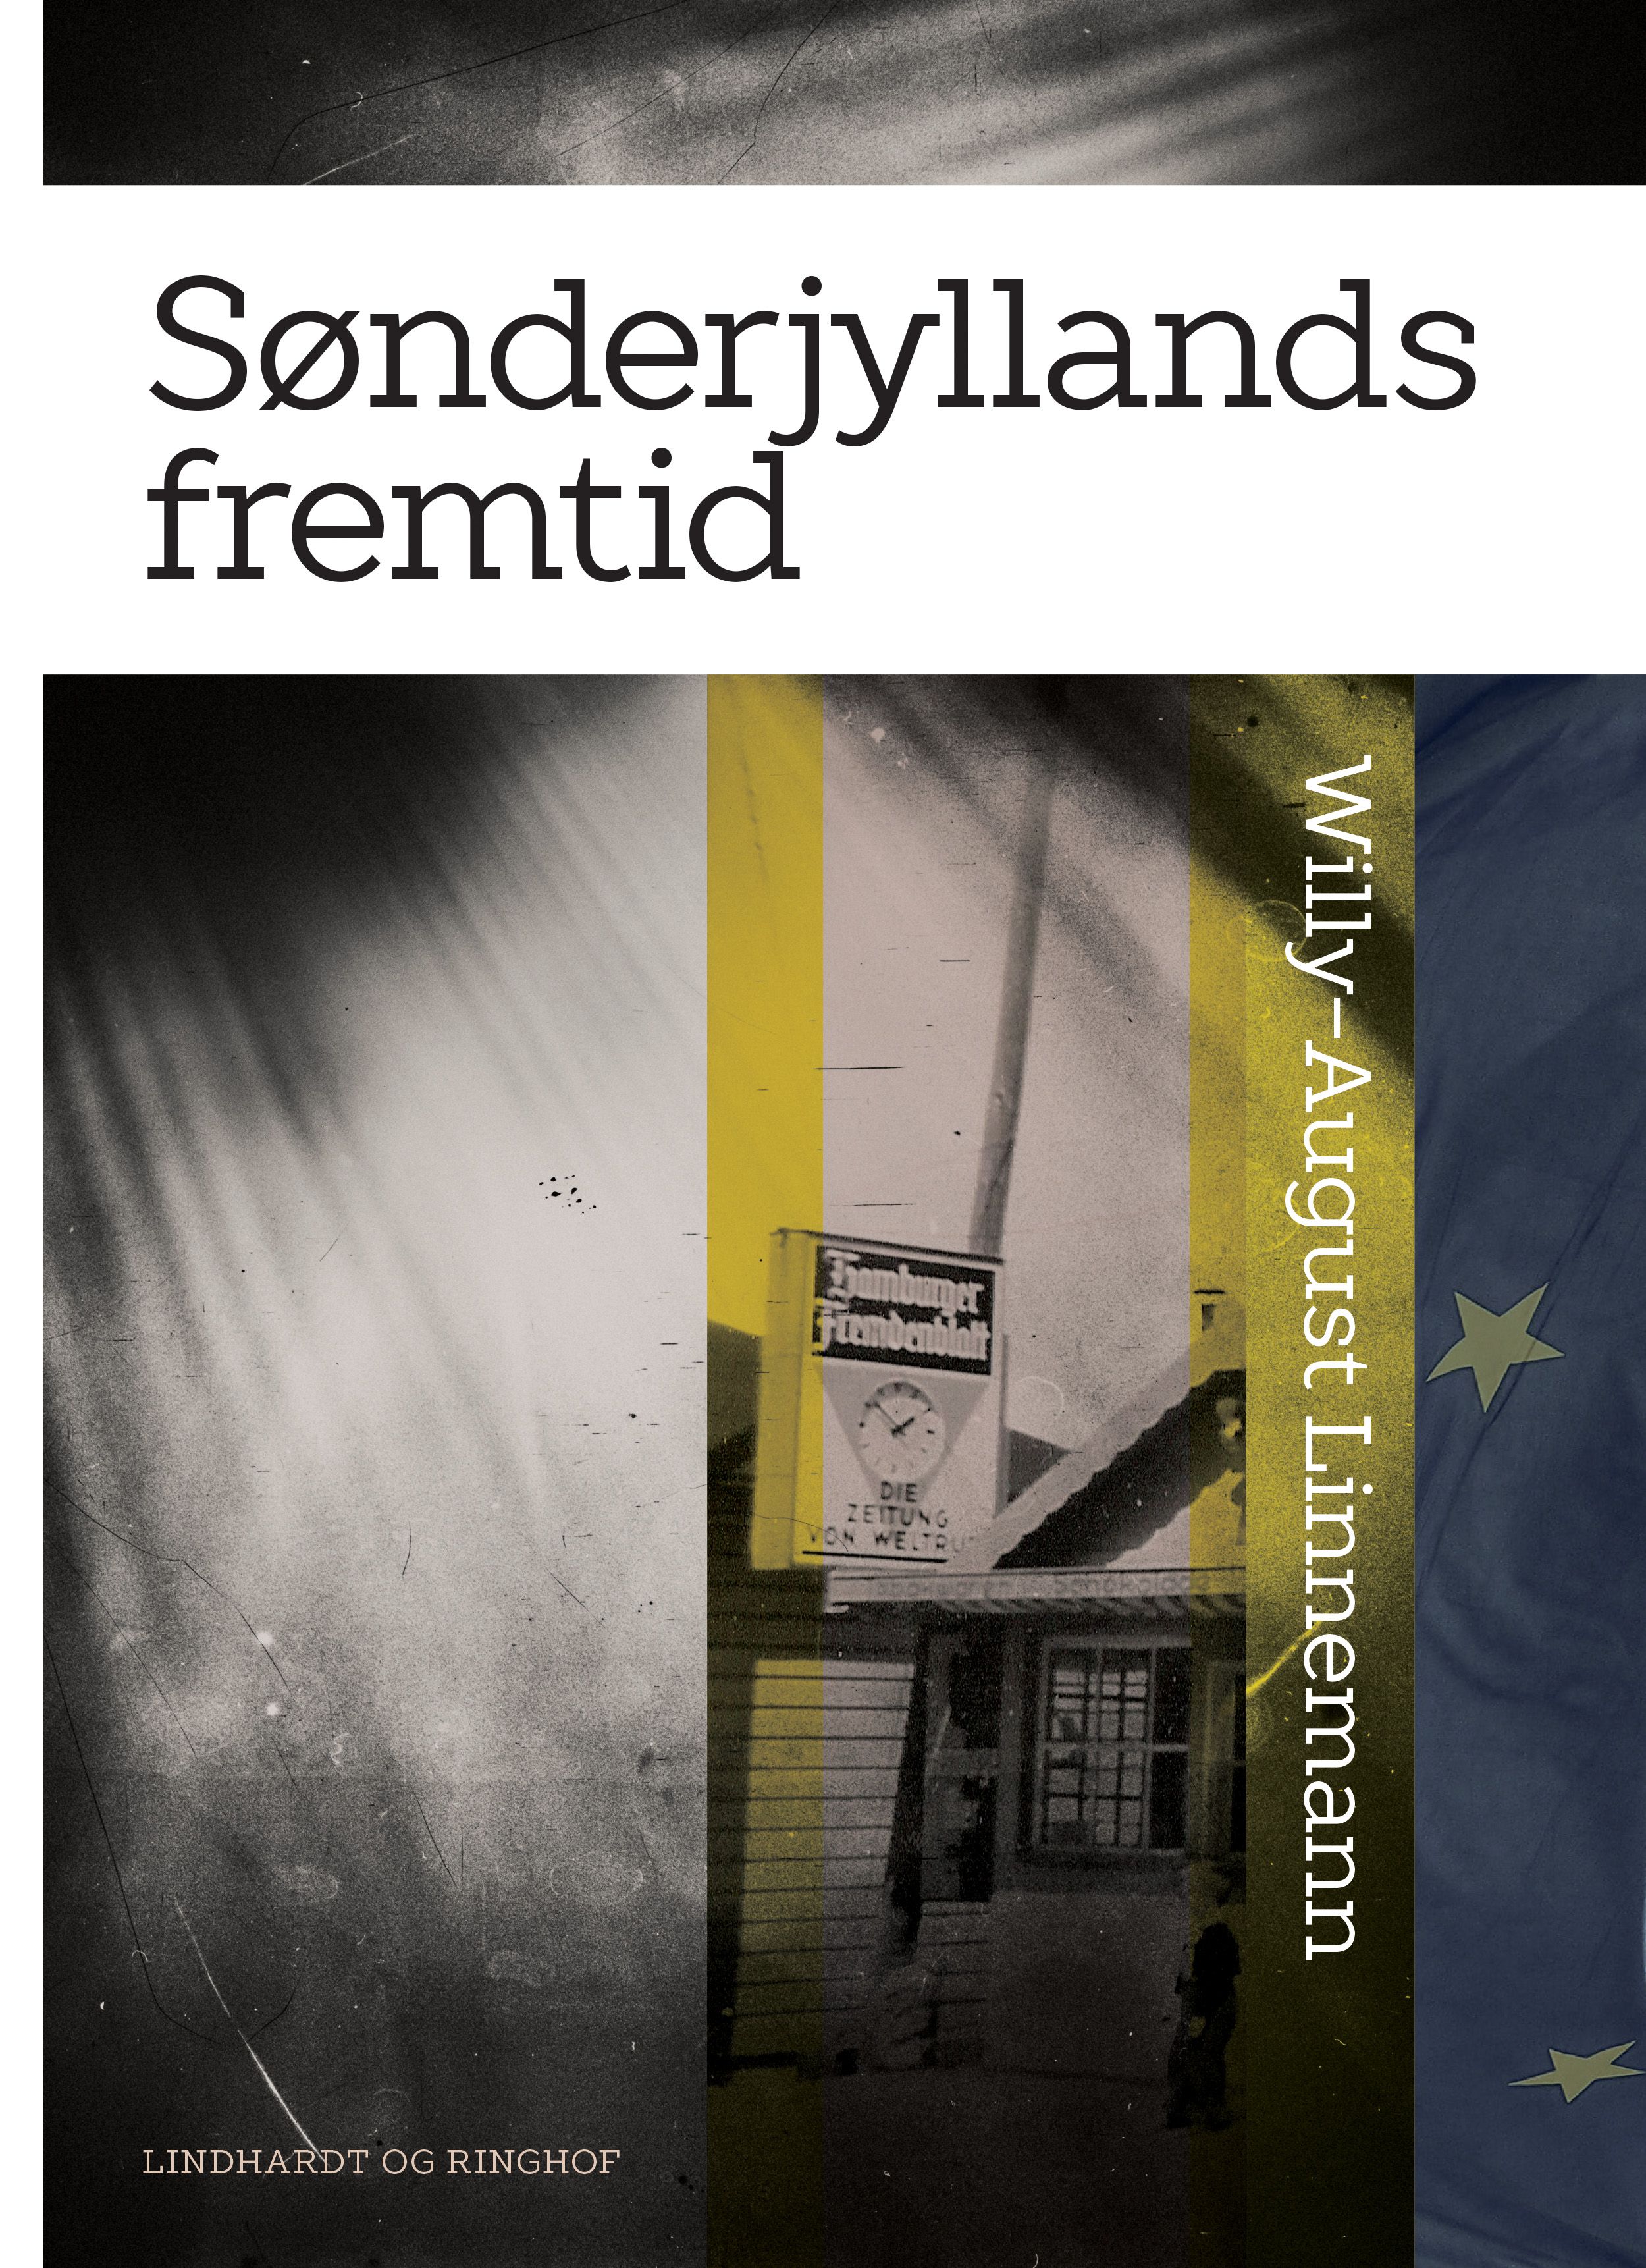 Sønderjyllands fremtid, e-bog af Willy-August Linnemann